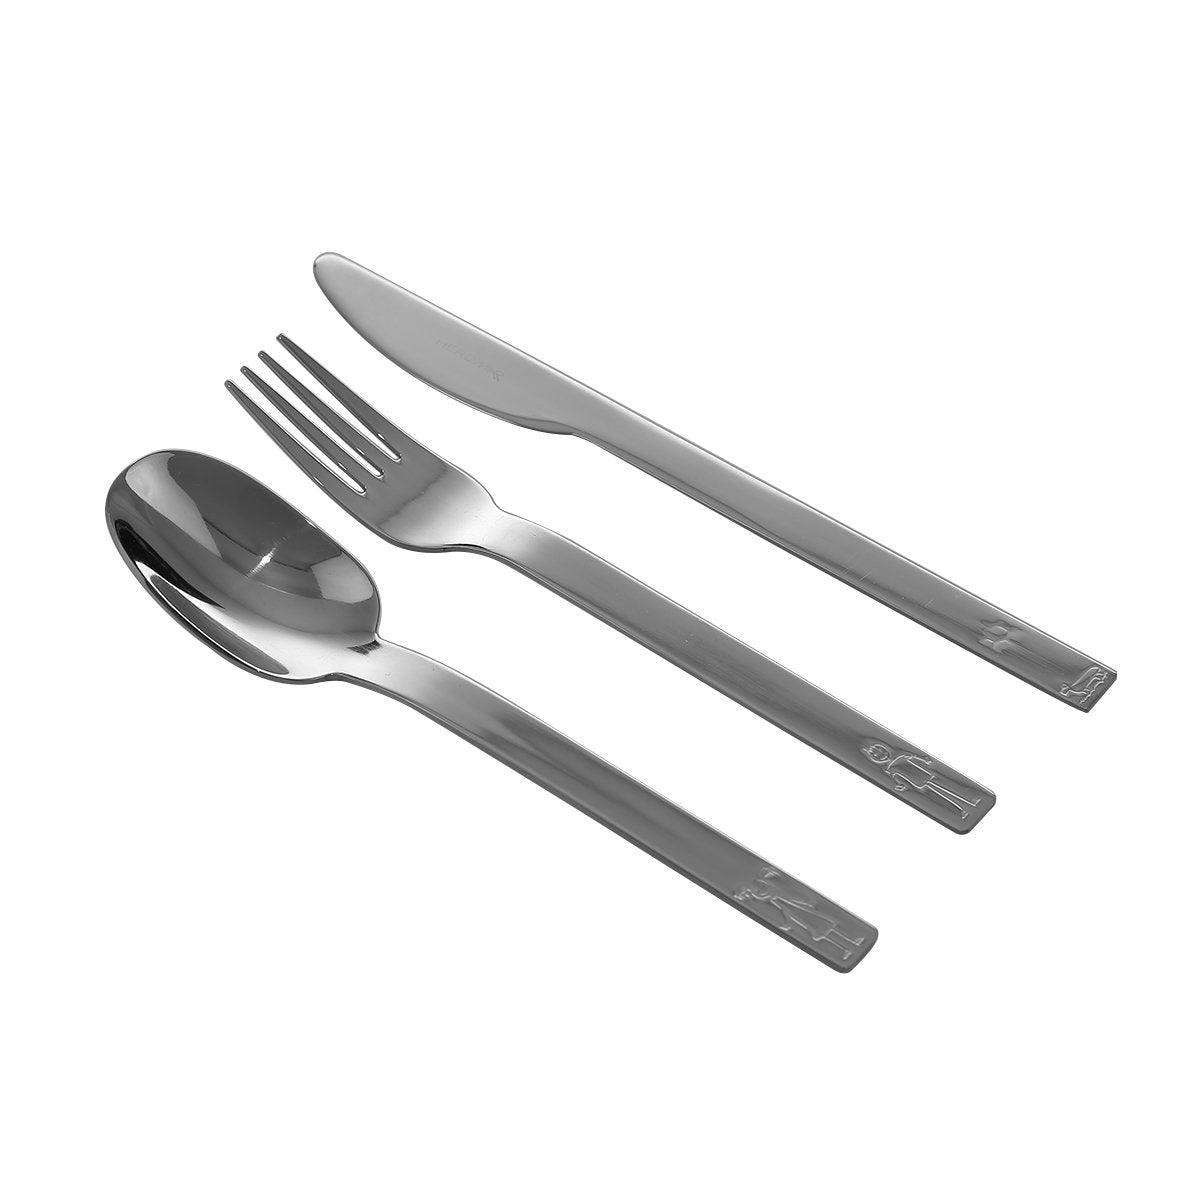 Herdmar Silver Metal Turini S.S Baby Cutlery - Set of 3 - Home4u